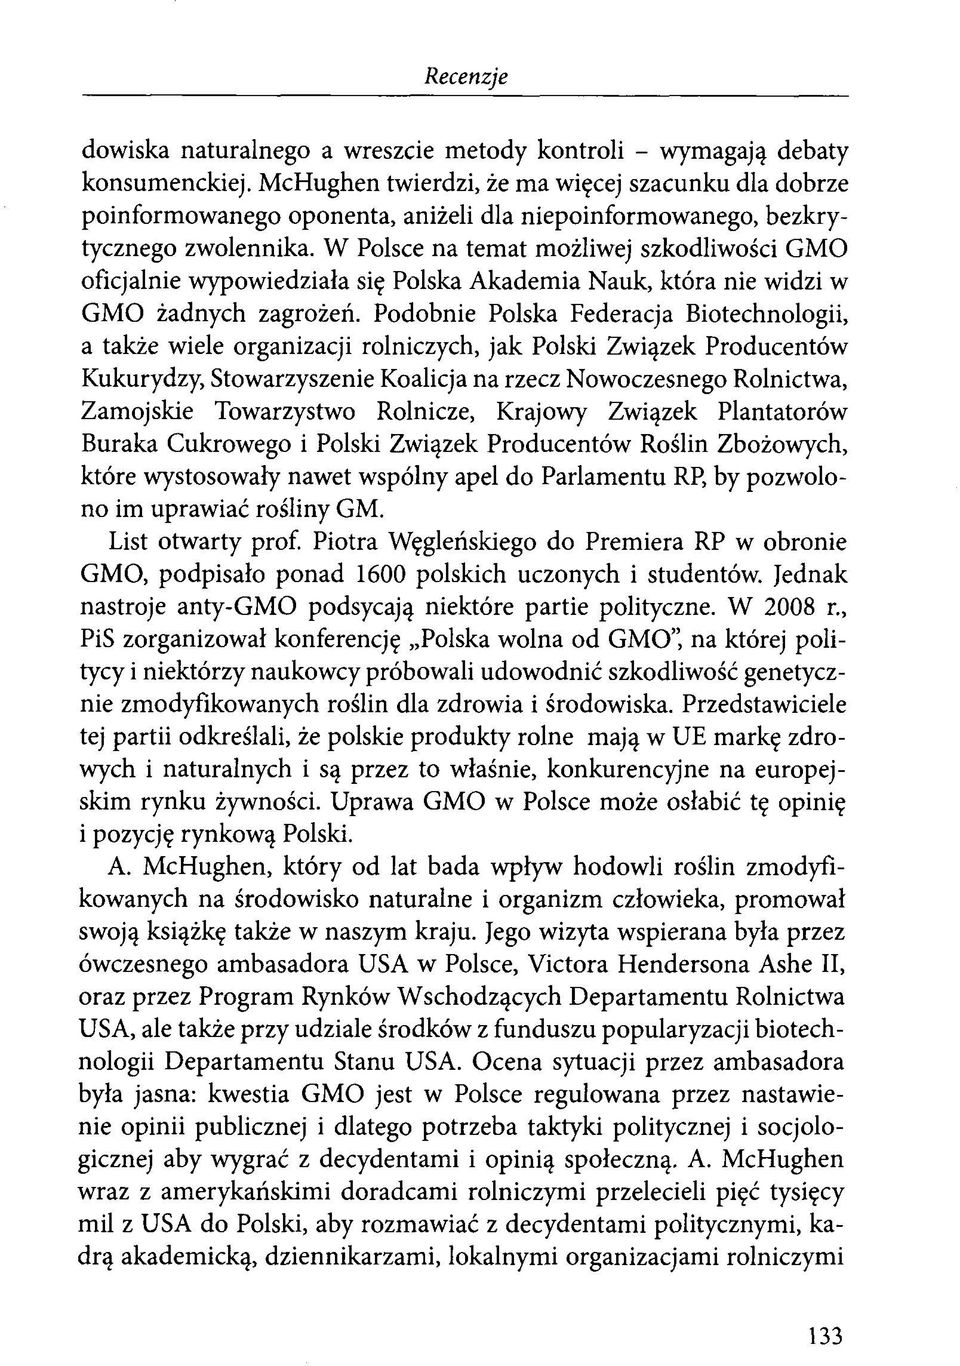 W Polsce na temat możliwej szkodliwości GMO oficjalnie wypowiedziała się Polska Akademia Nauk, która nie widzi w GMO żadnych zagrożeń.